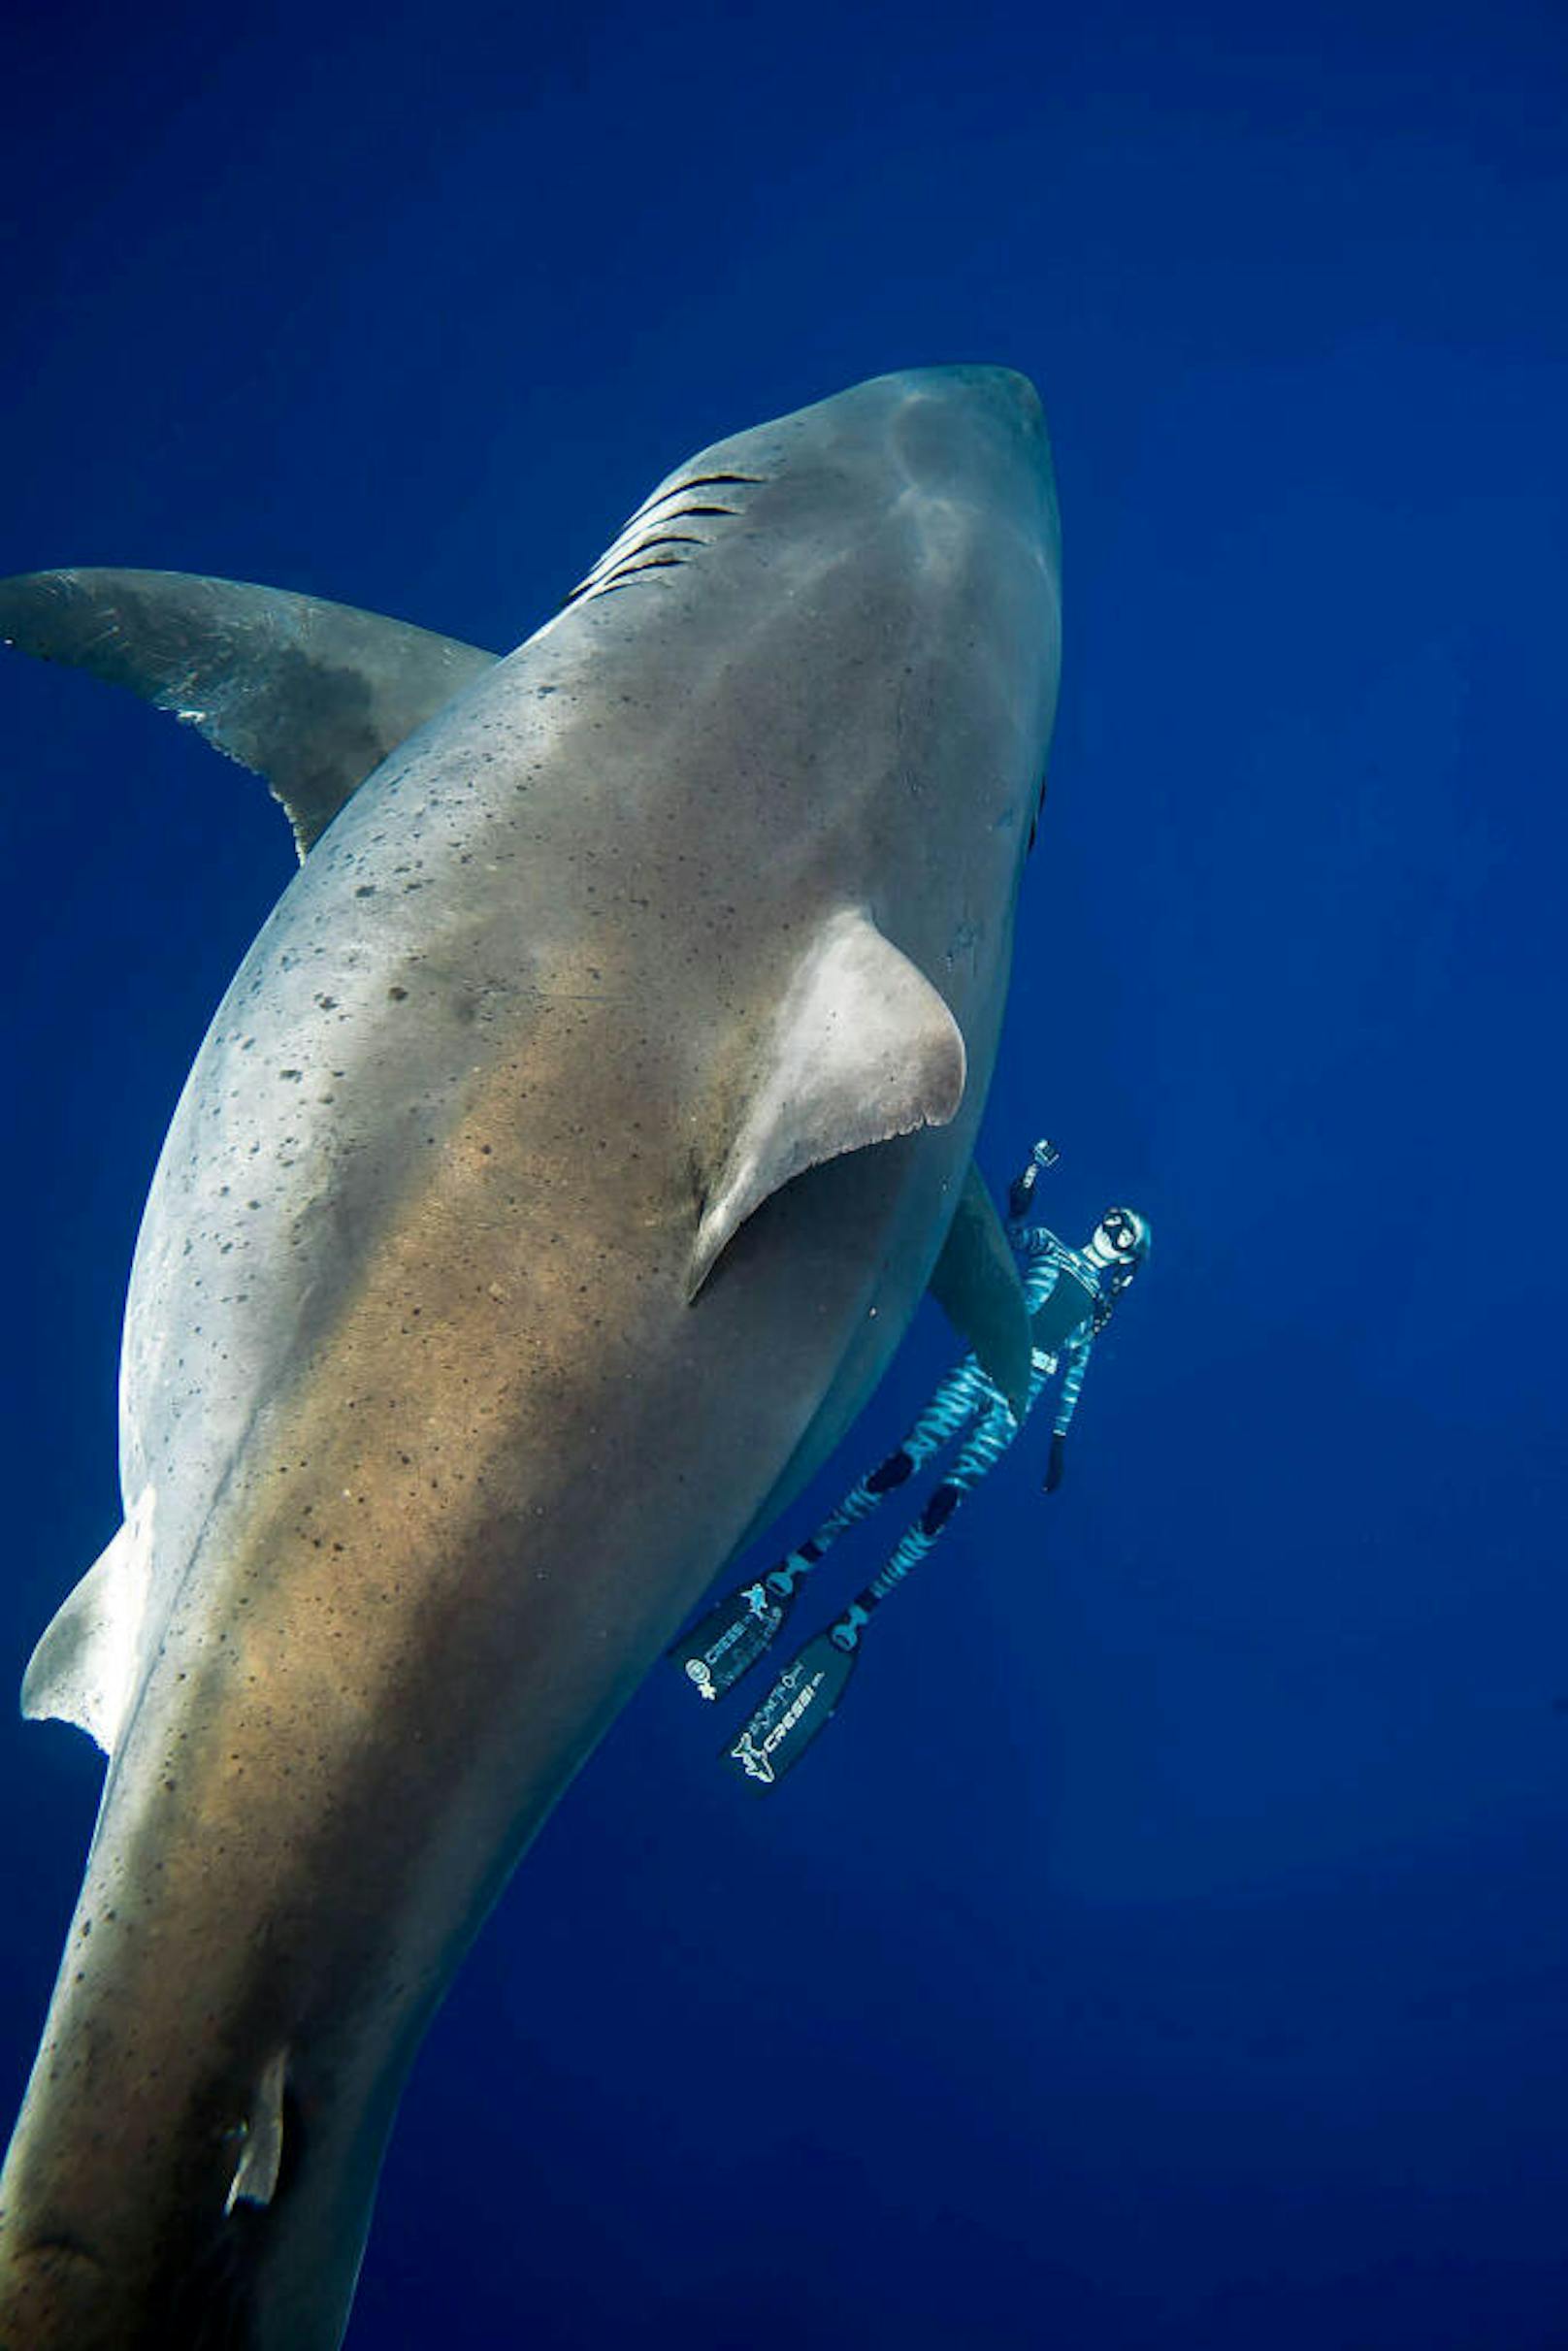 Der Weiße Hai sei "erschreckend breit" und womöglich schwanger gewesen, sagte sie.